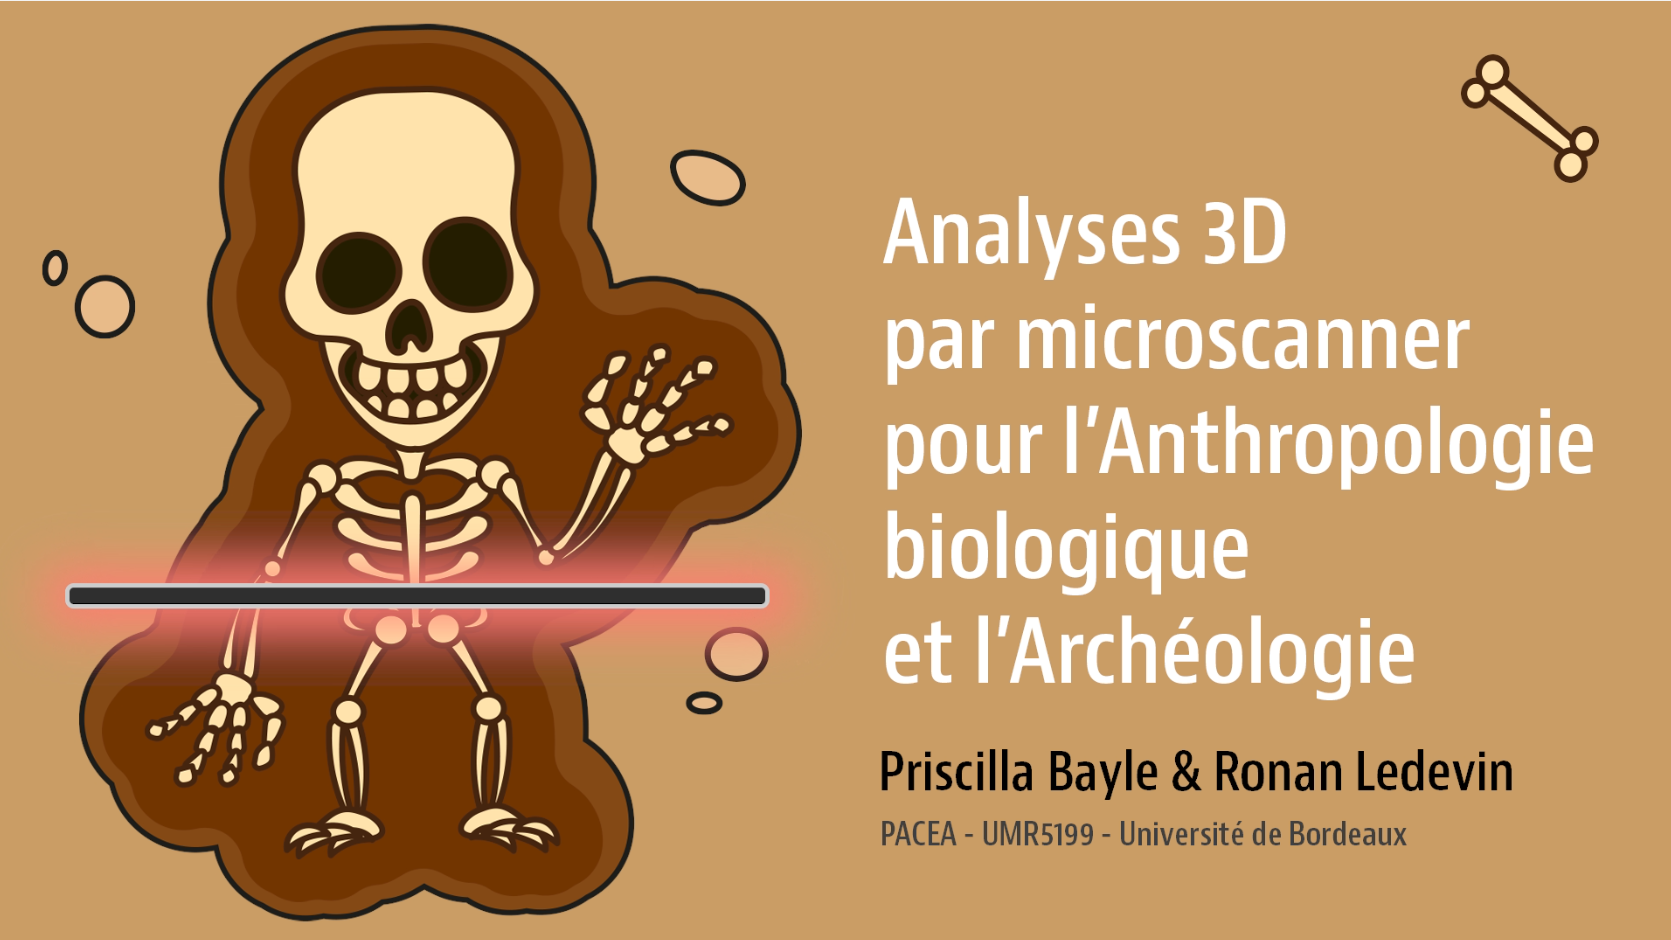 Analyses 3D par microscanner pour l'anthropologie biologique et l'archéologie